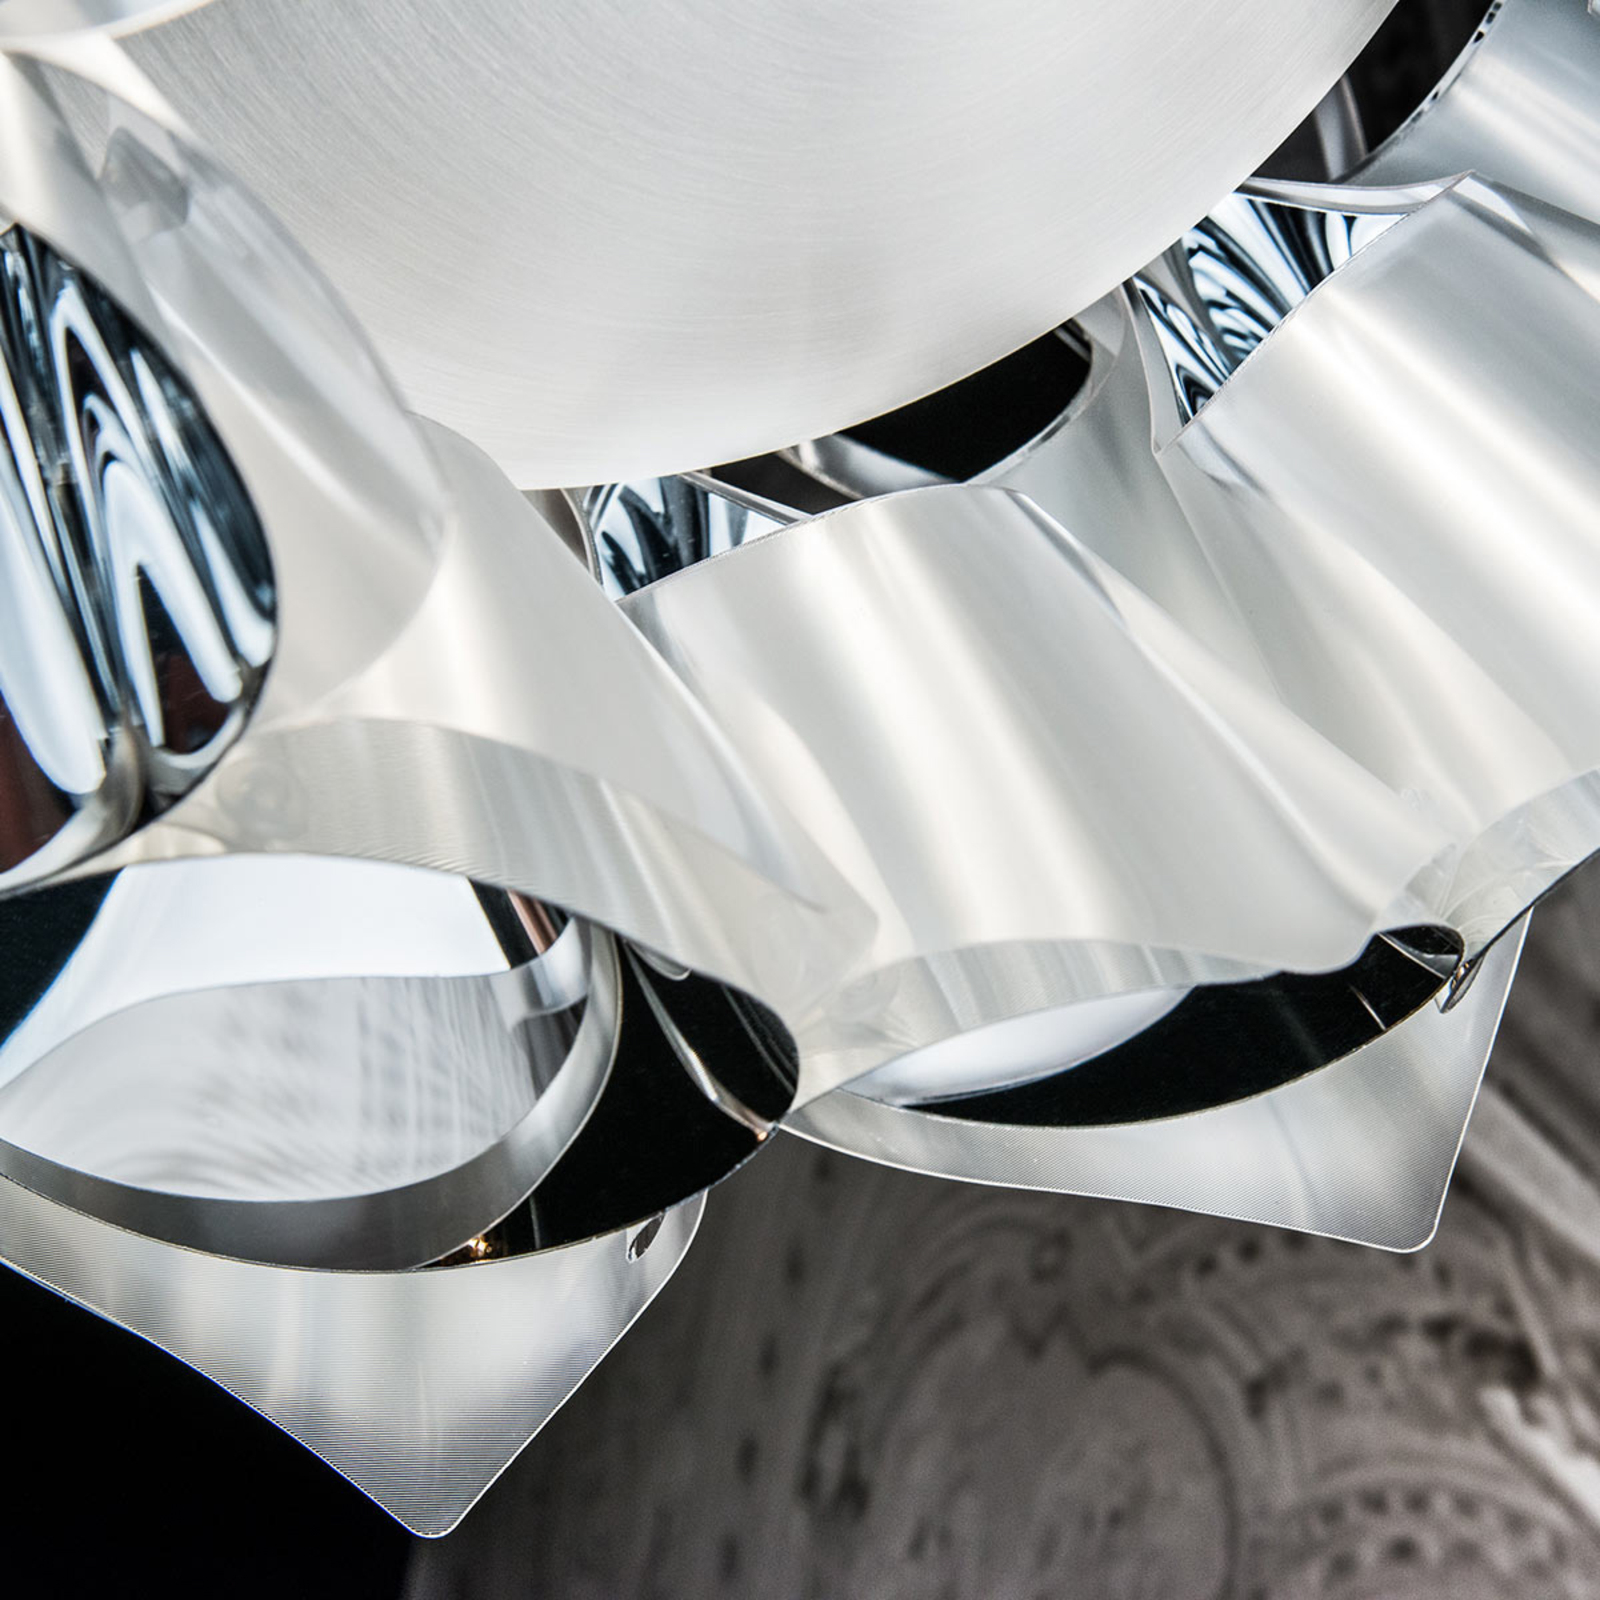 Slamp Flora - designer-hængelampe, sølv, 50 cm